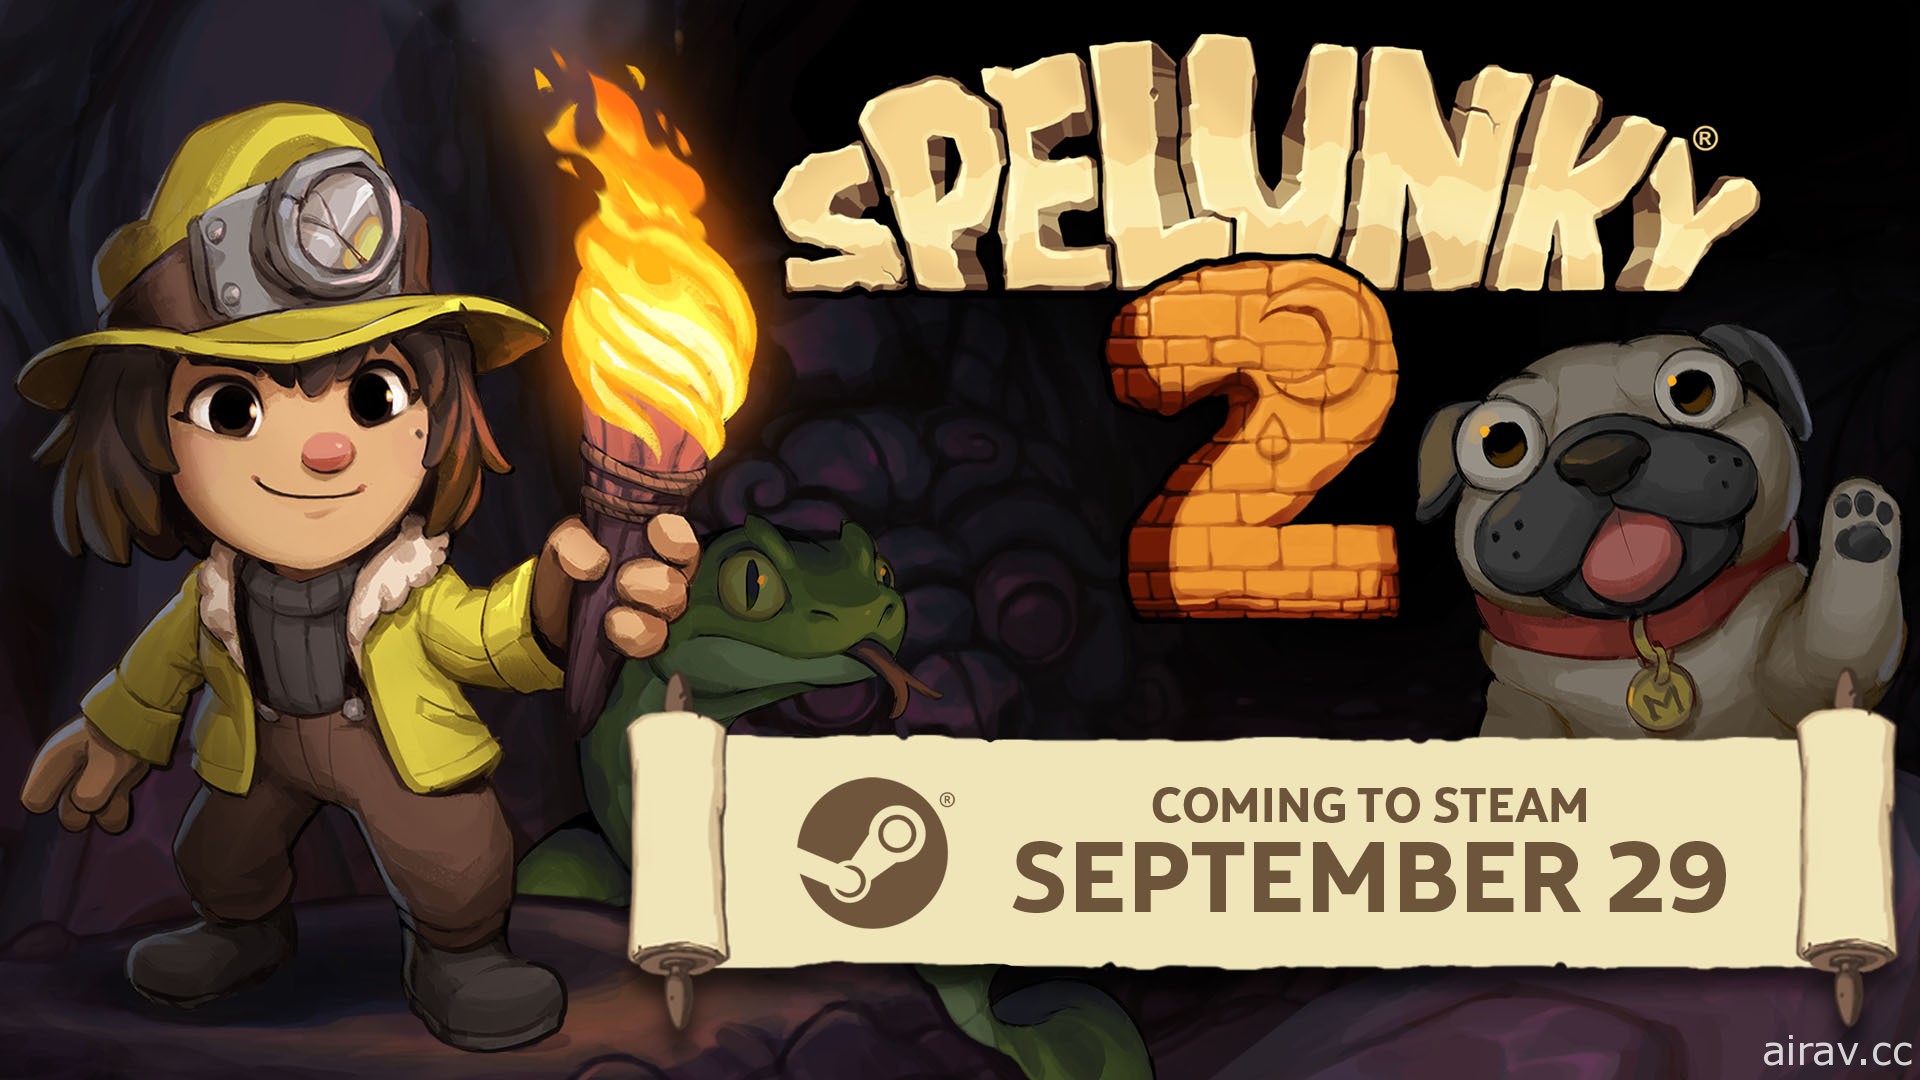 2D 橫向 roguelike 冒險新作《地底尋寶 2》確認 PC 版於 9 月 29 日登陸 Steam